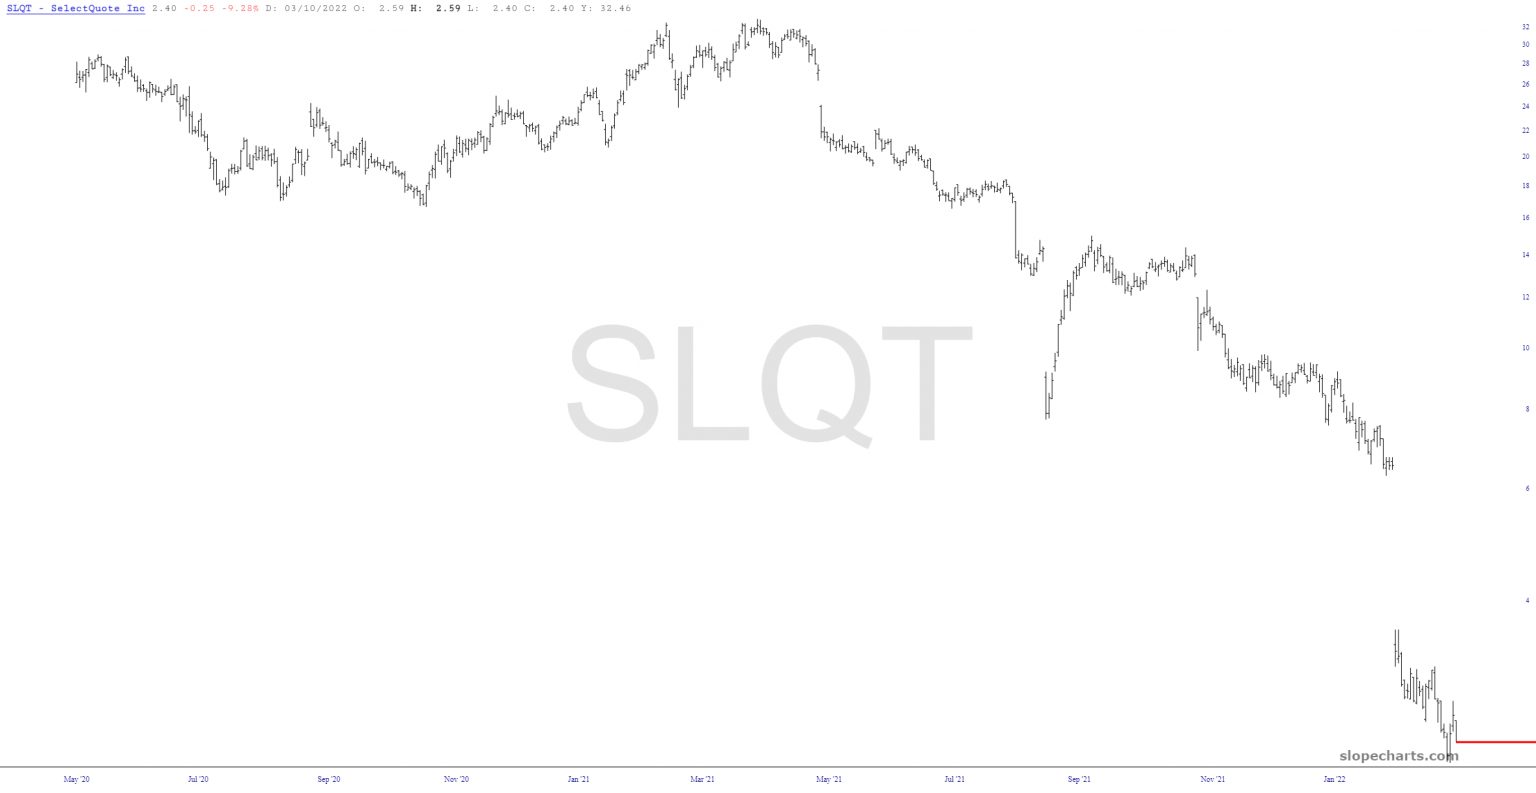 Long-Term SLQT Chart.